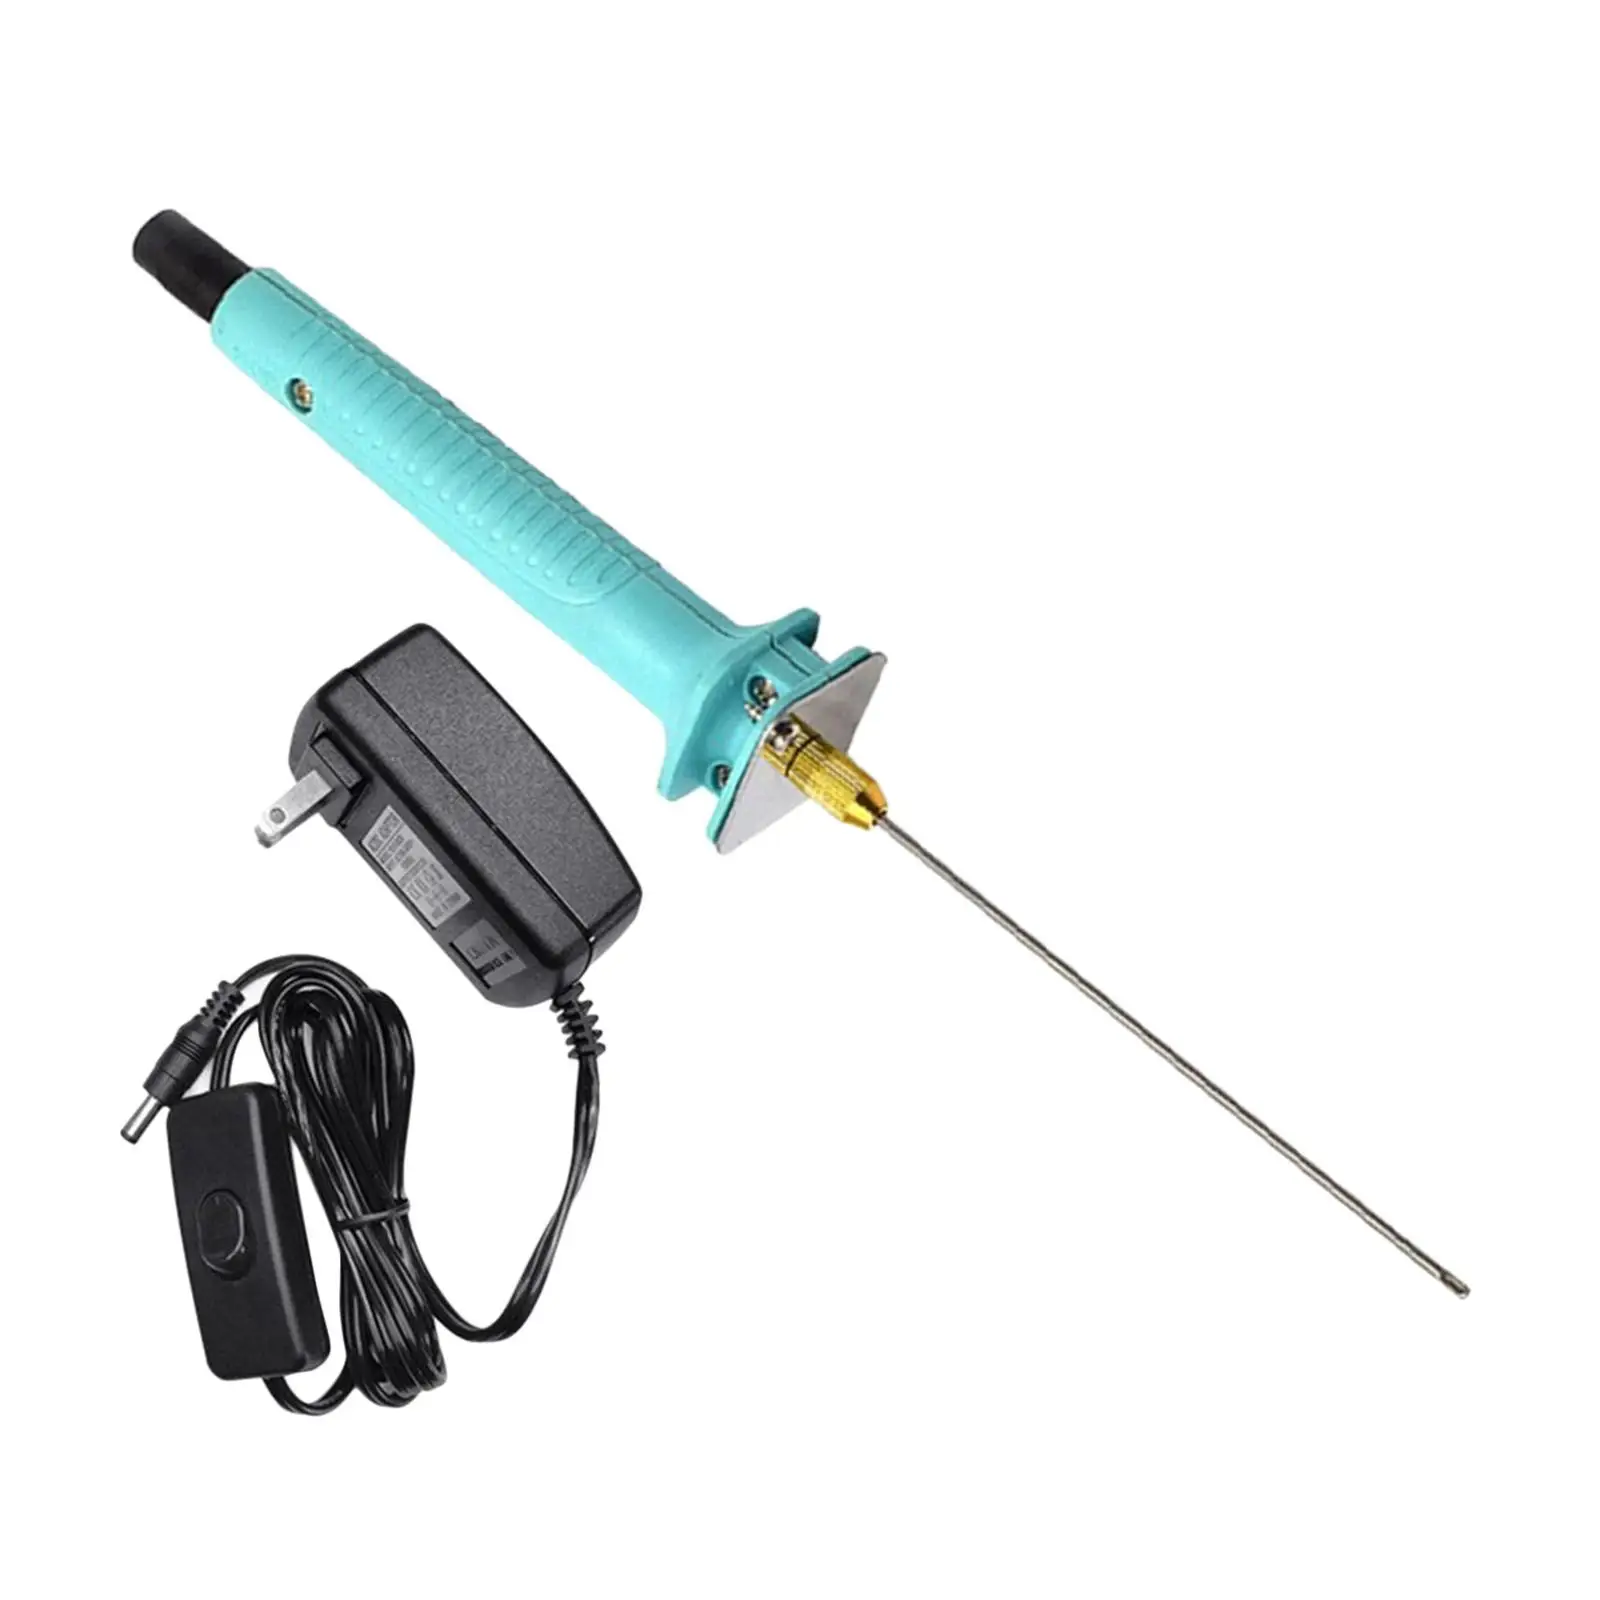 Hot Wire Electric Tools 110-240V DIY Cutting Pen Foam Cutter